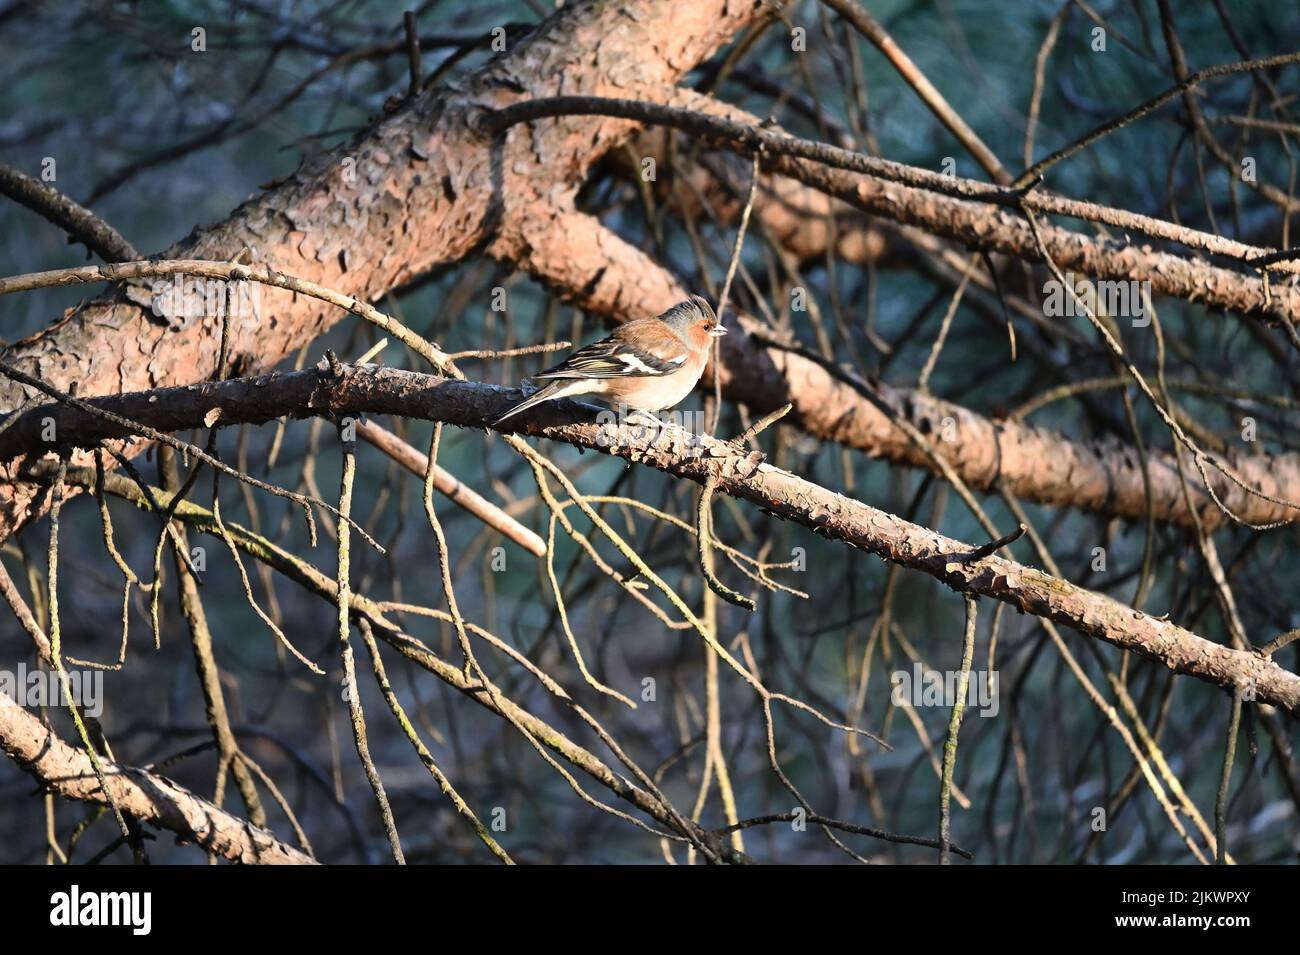 Los pinzones verdaderos - pájaros paseriformes pequeños a medianos de la familia Fringillidae Foto de stock